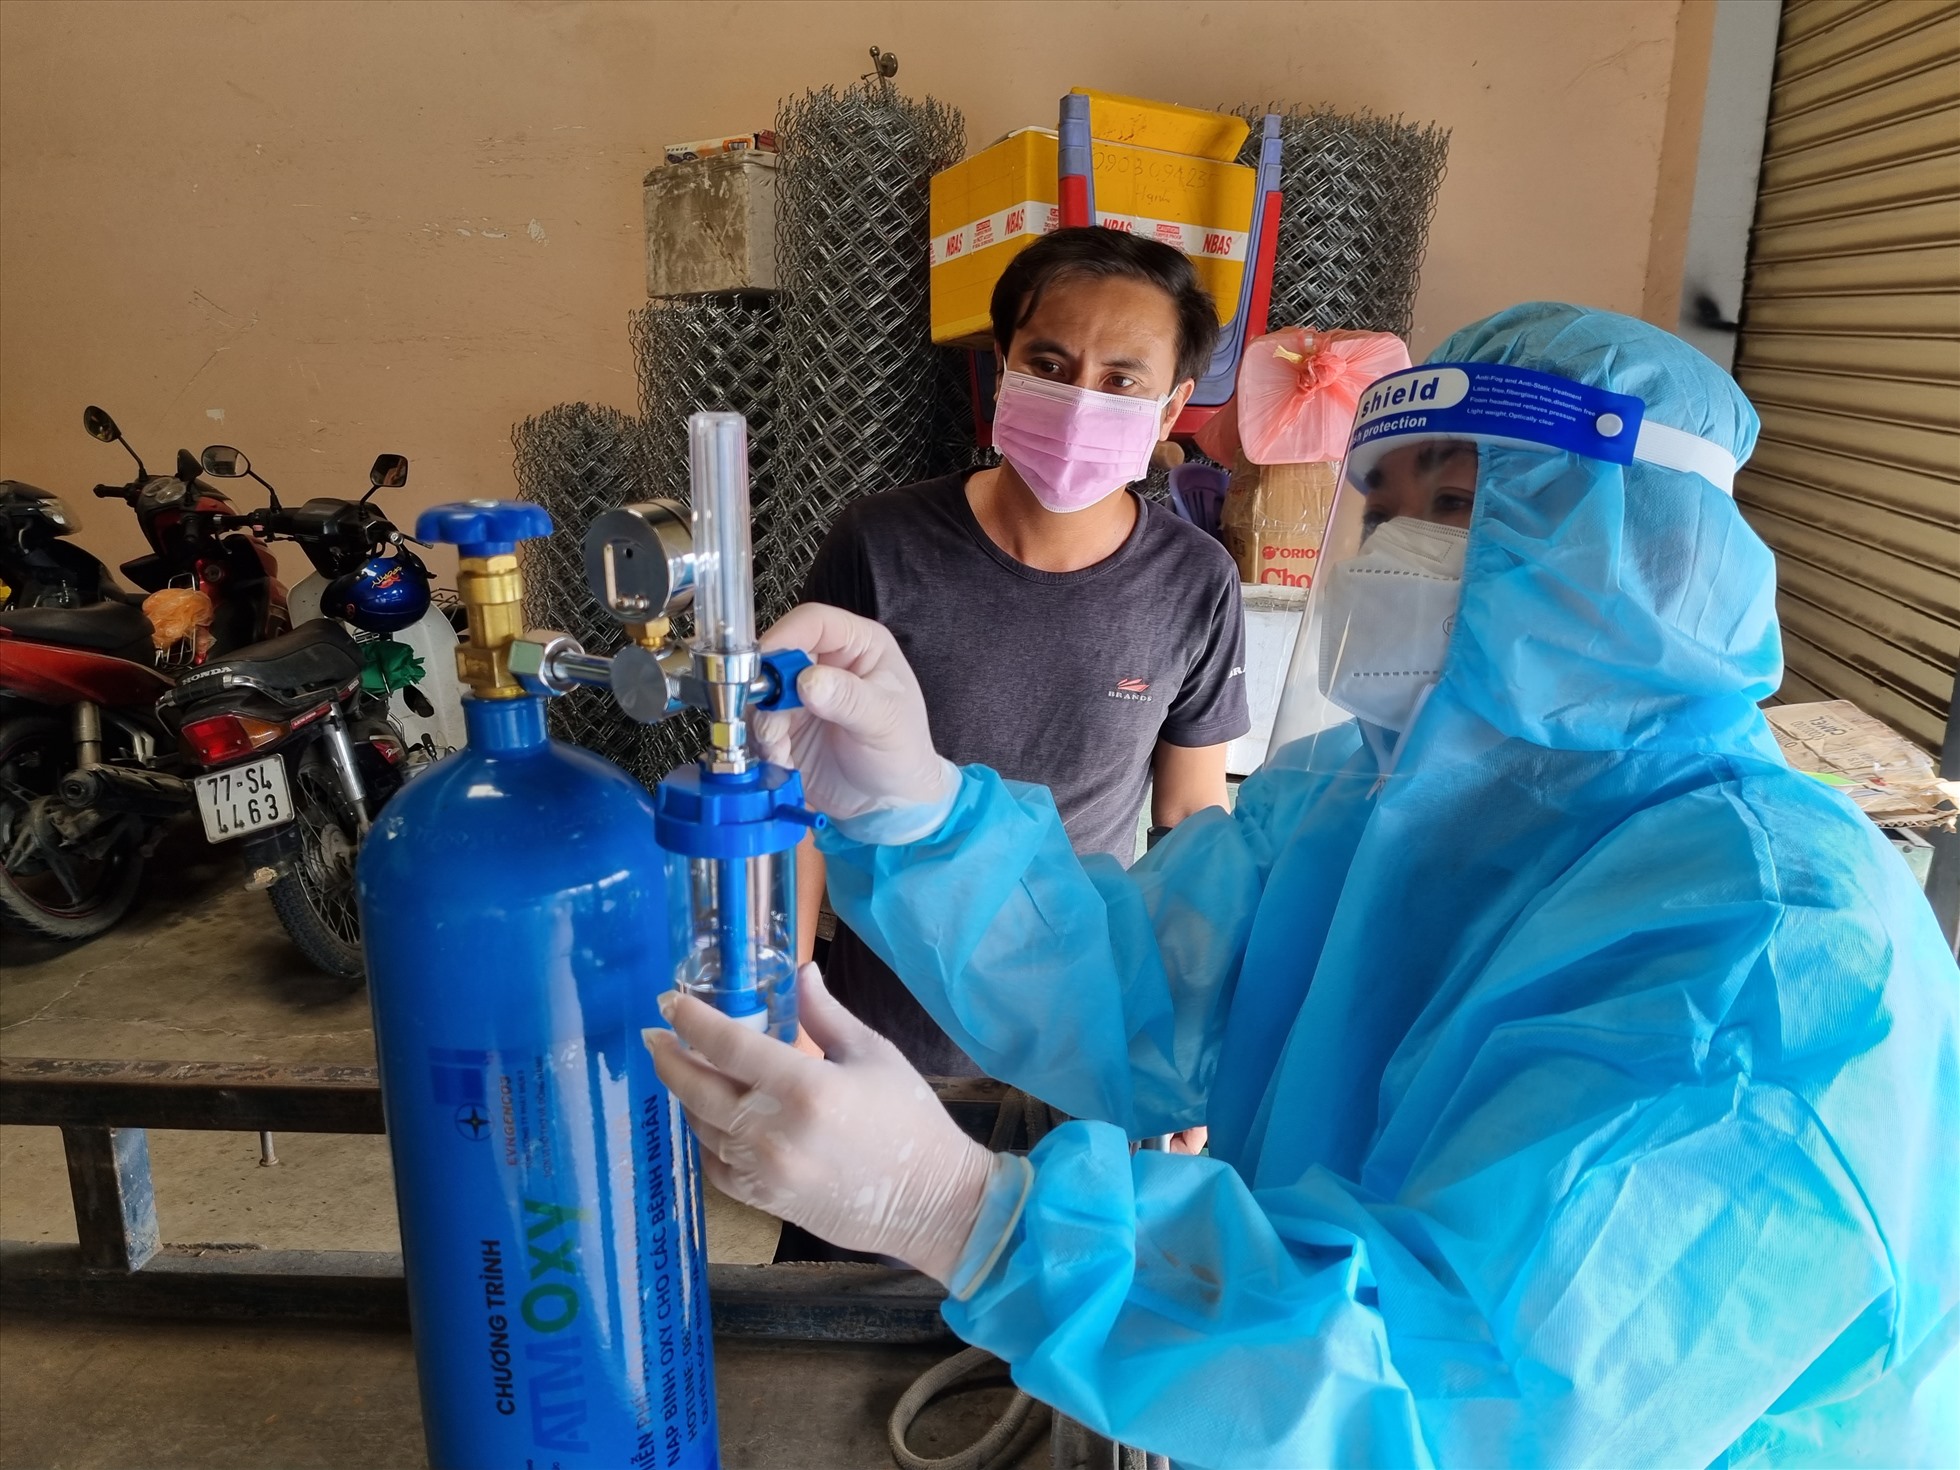 Cán bộ công đoàn EVNGENCO3, đang lắp đặt, hướng dẫn sửa dụng bình ô xy cho một gia đình có người bị mắc COVID-19 trên địa bàn Thành phố Thủ Đức, Thành phố Hổ Chí Minh thời điểm tháng 8.2021. Ảnh: Nam Dương